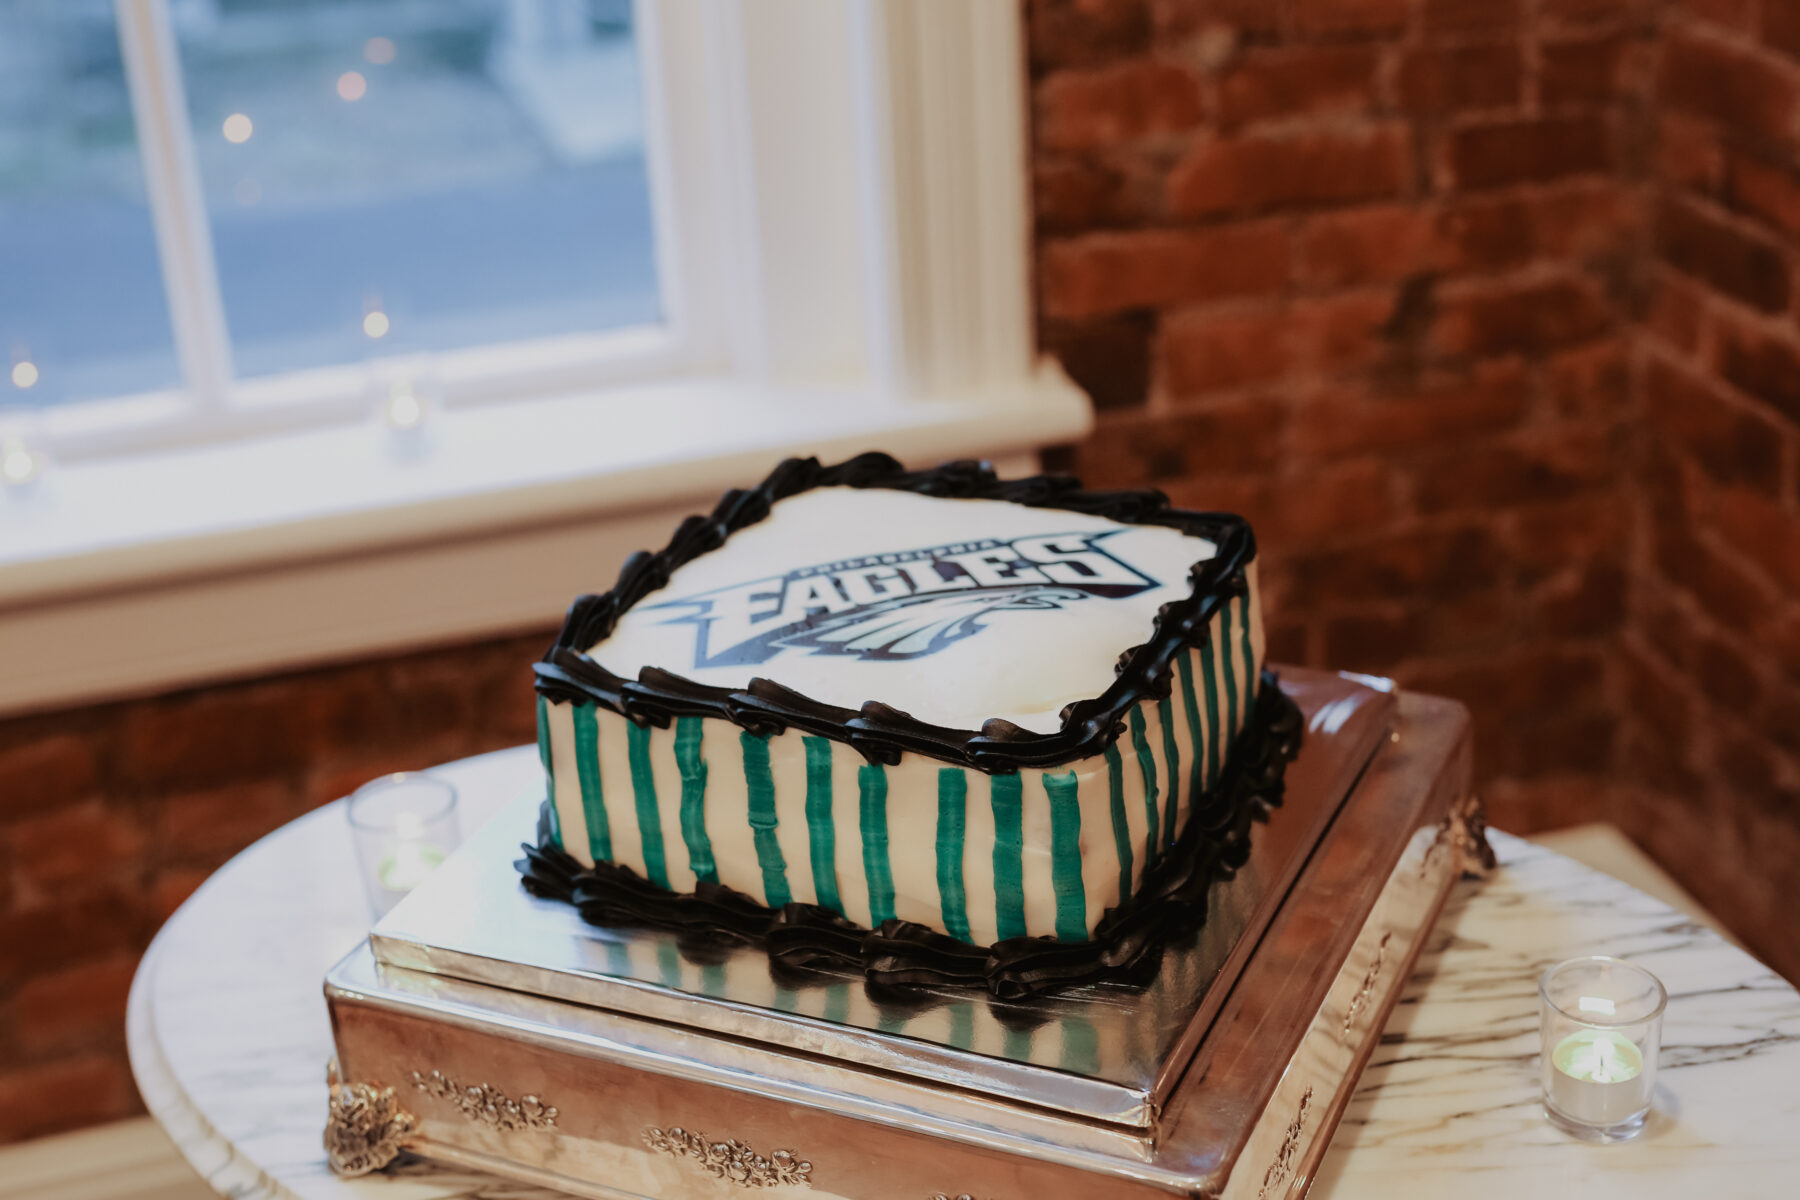 Philadelphia Eagles groom's cake | Nashville Bride Guide